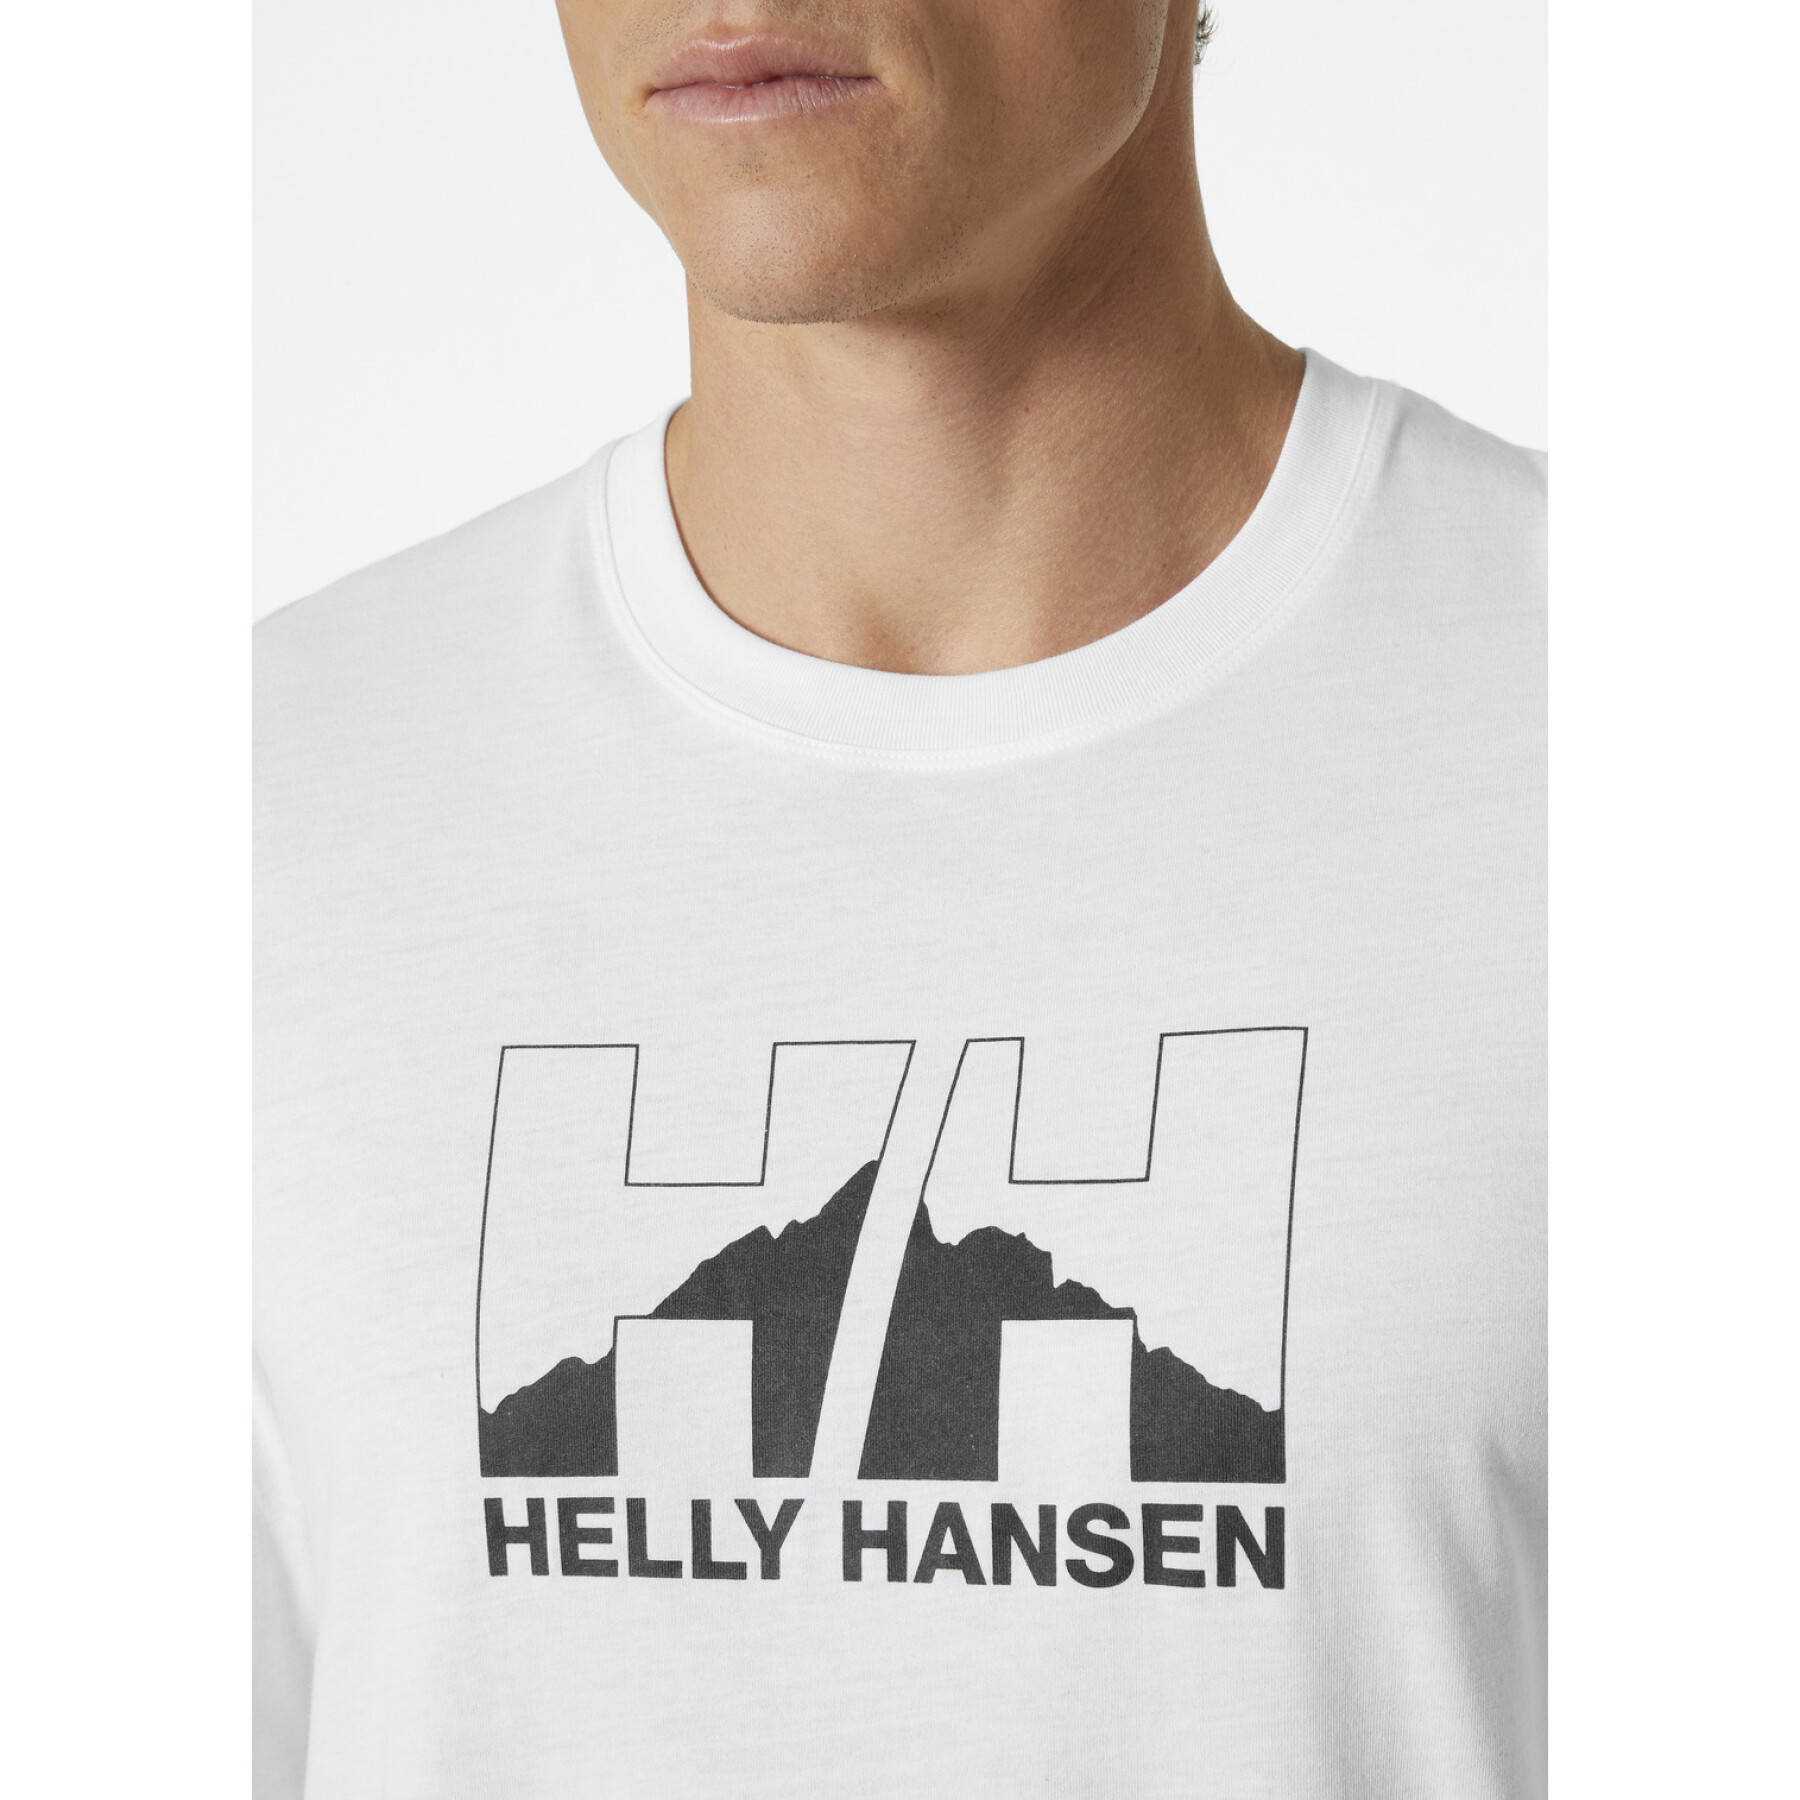 Camiseta Norte Helly Hansen Graphic Crew